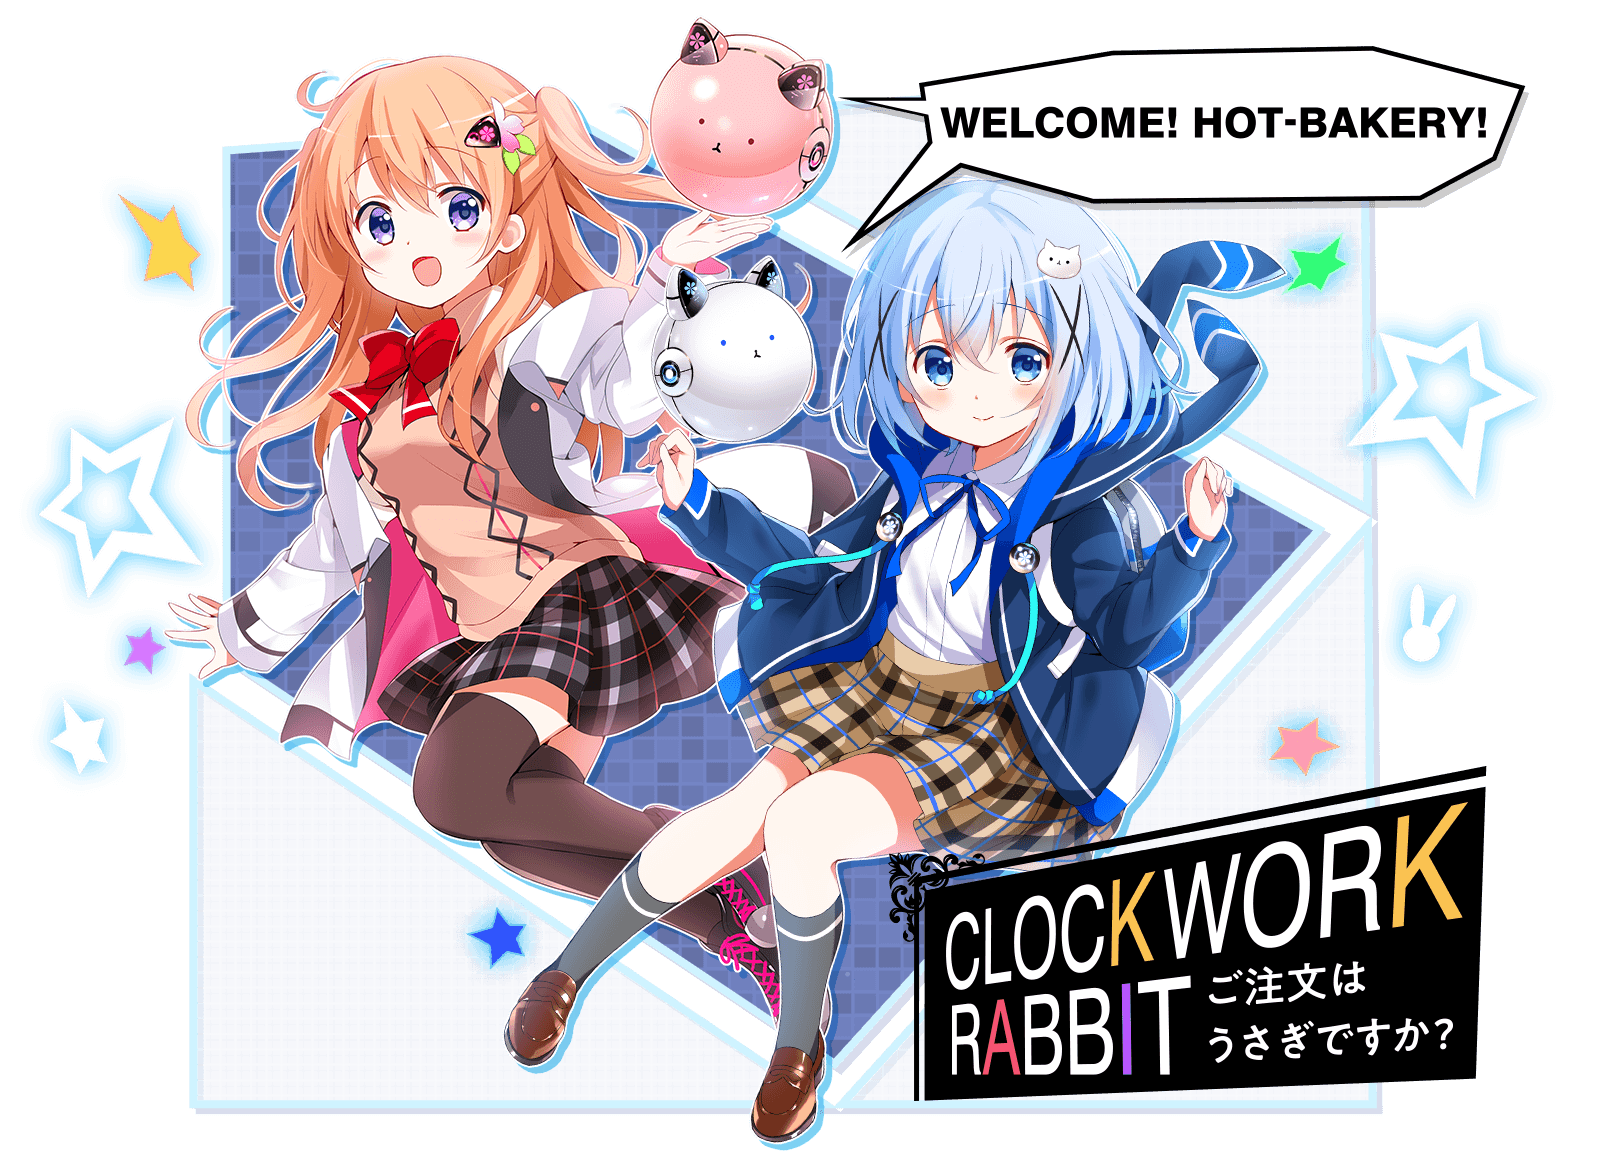 「CLOCKWORK RABBIT」WELCOME! HOT-BAKERY!